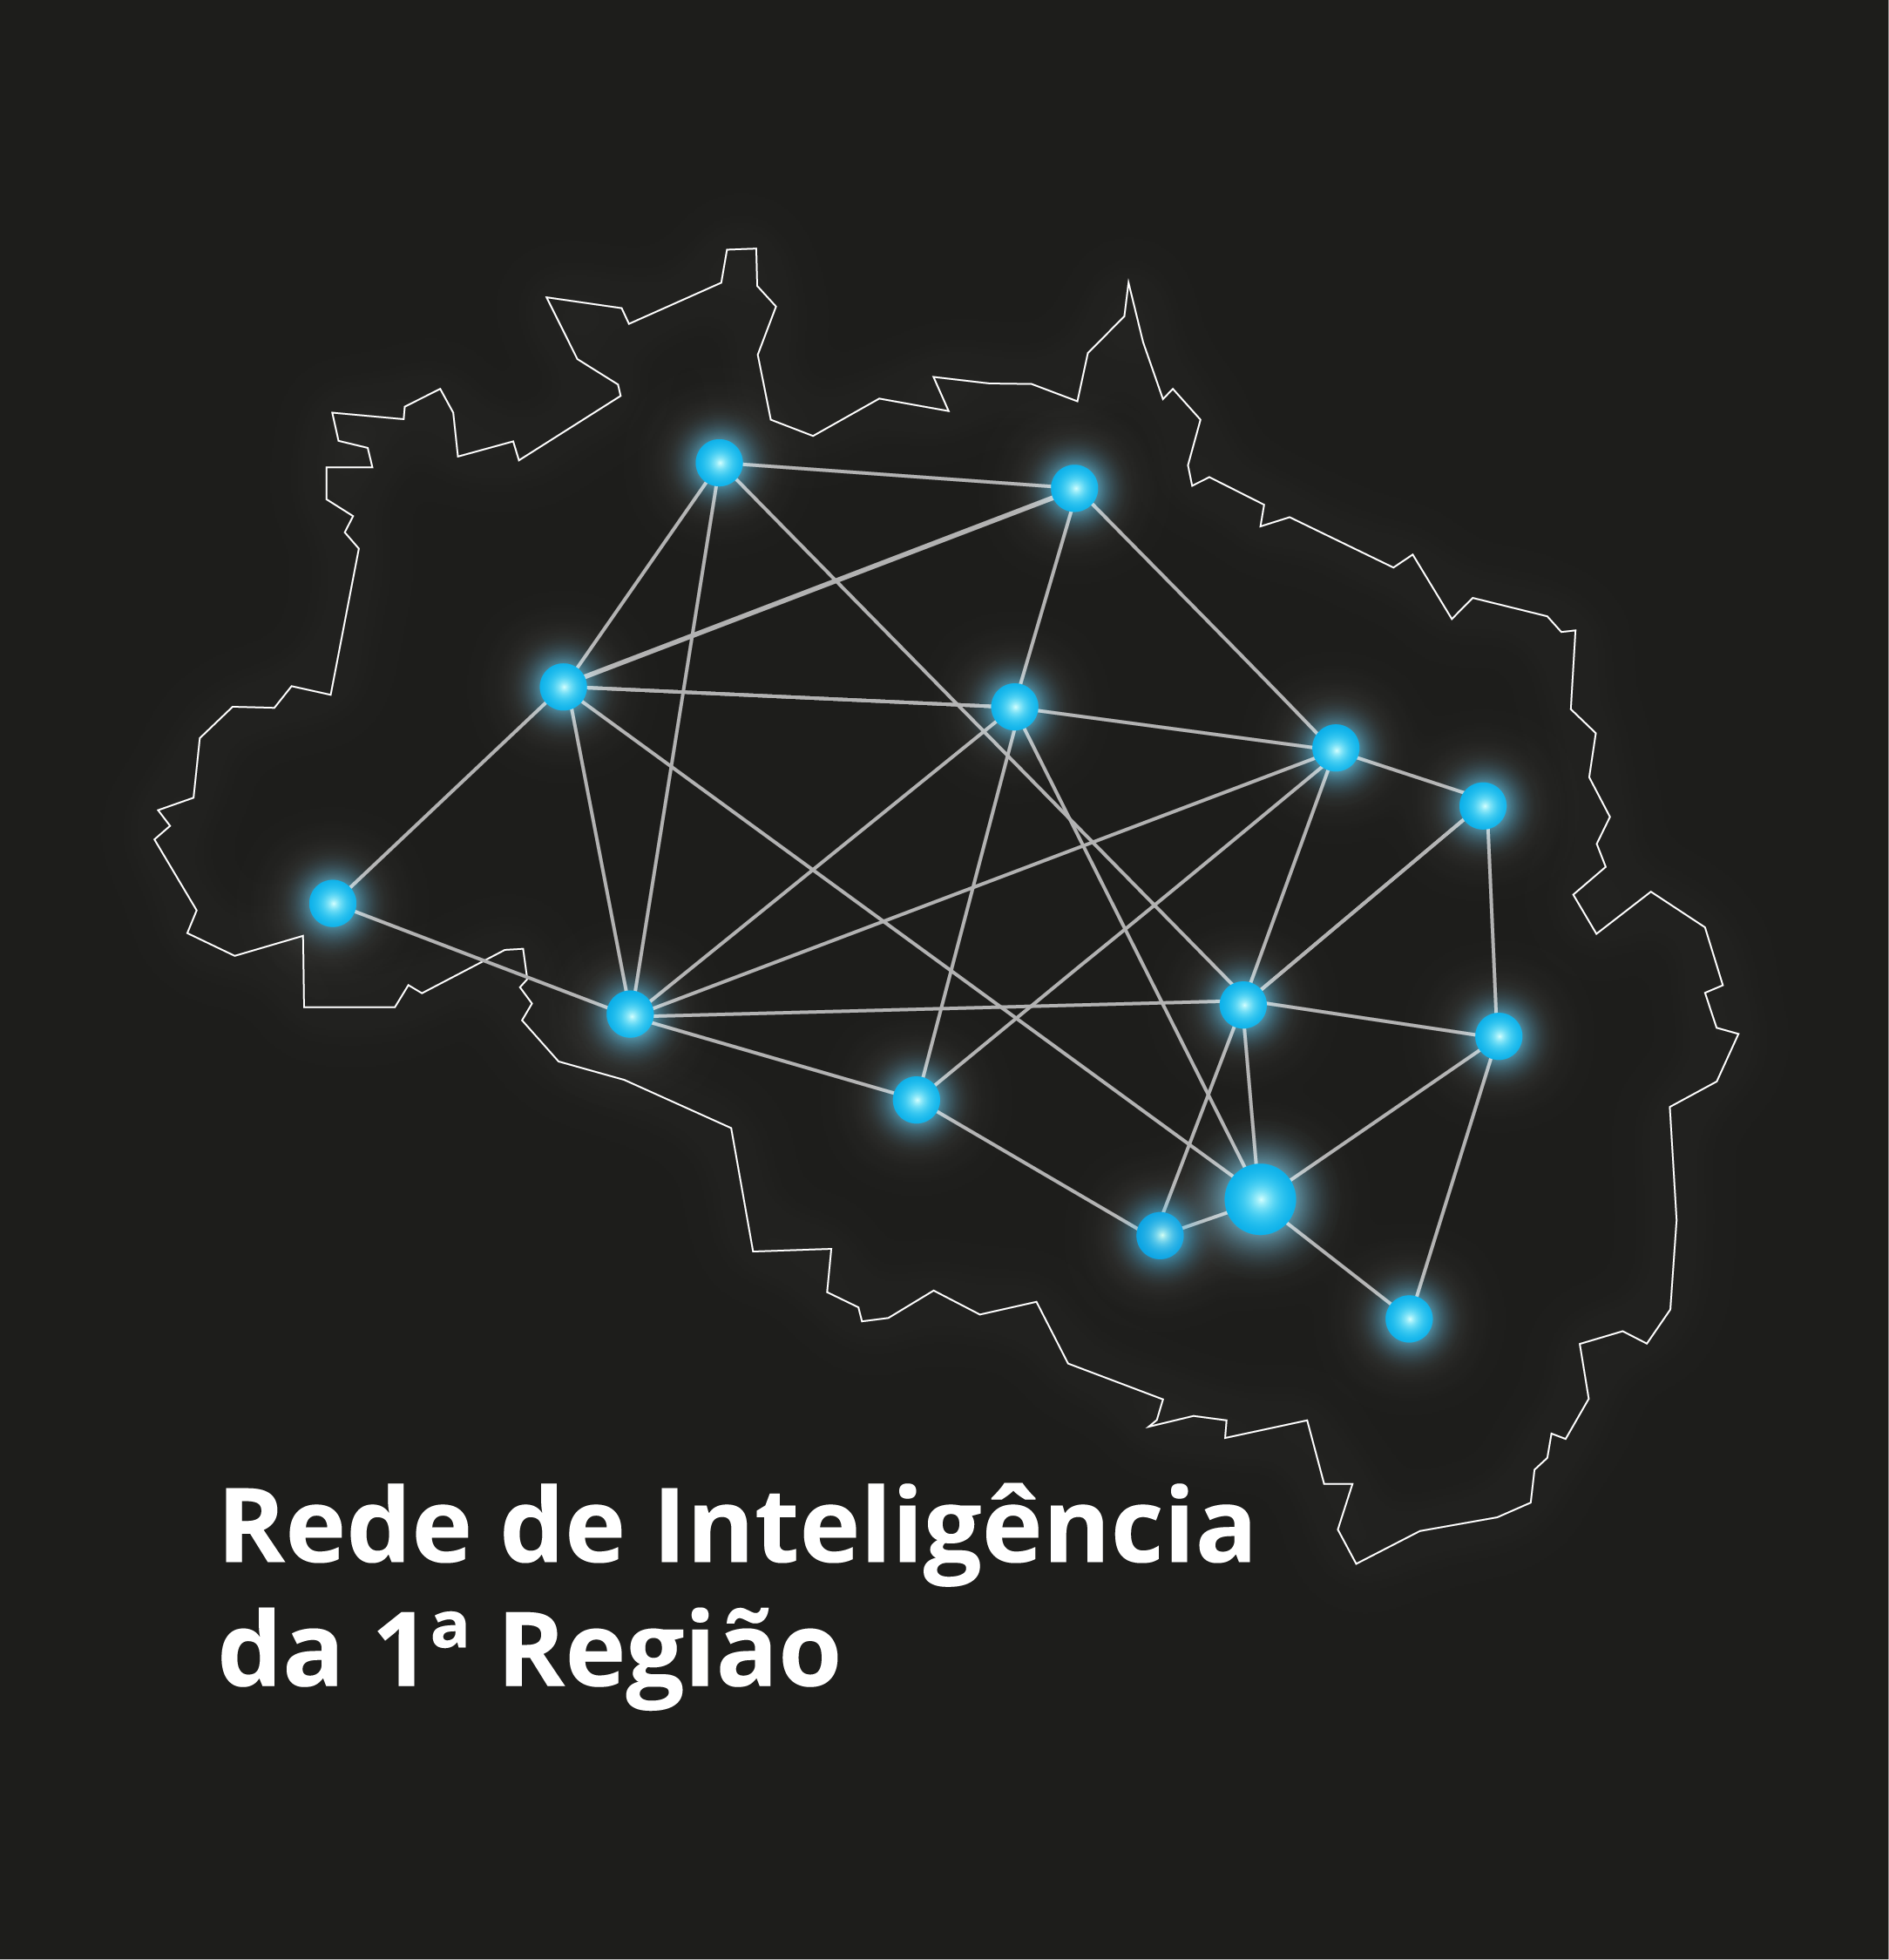 INSTITUCIONAL: Designados os membros da Rede de Inteligência da 1ª Região (Reint1)